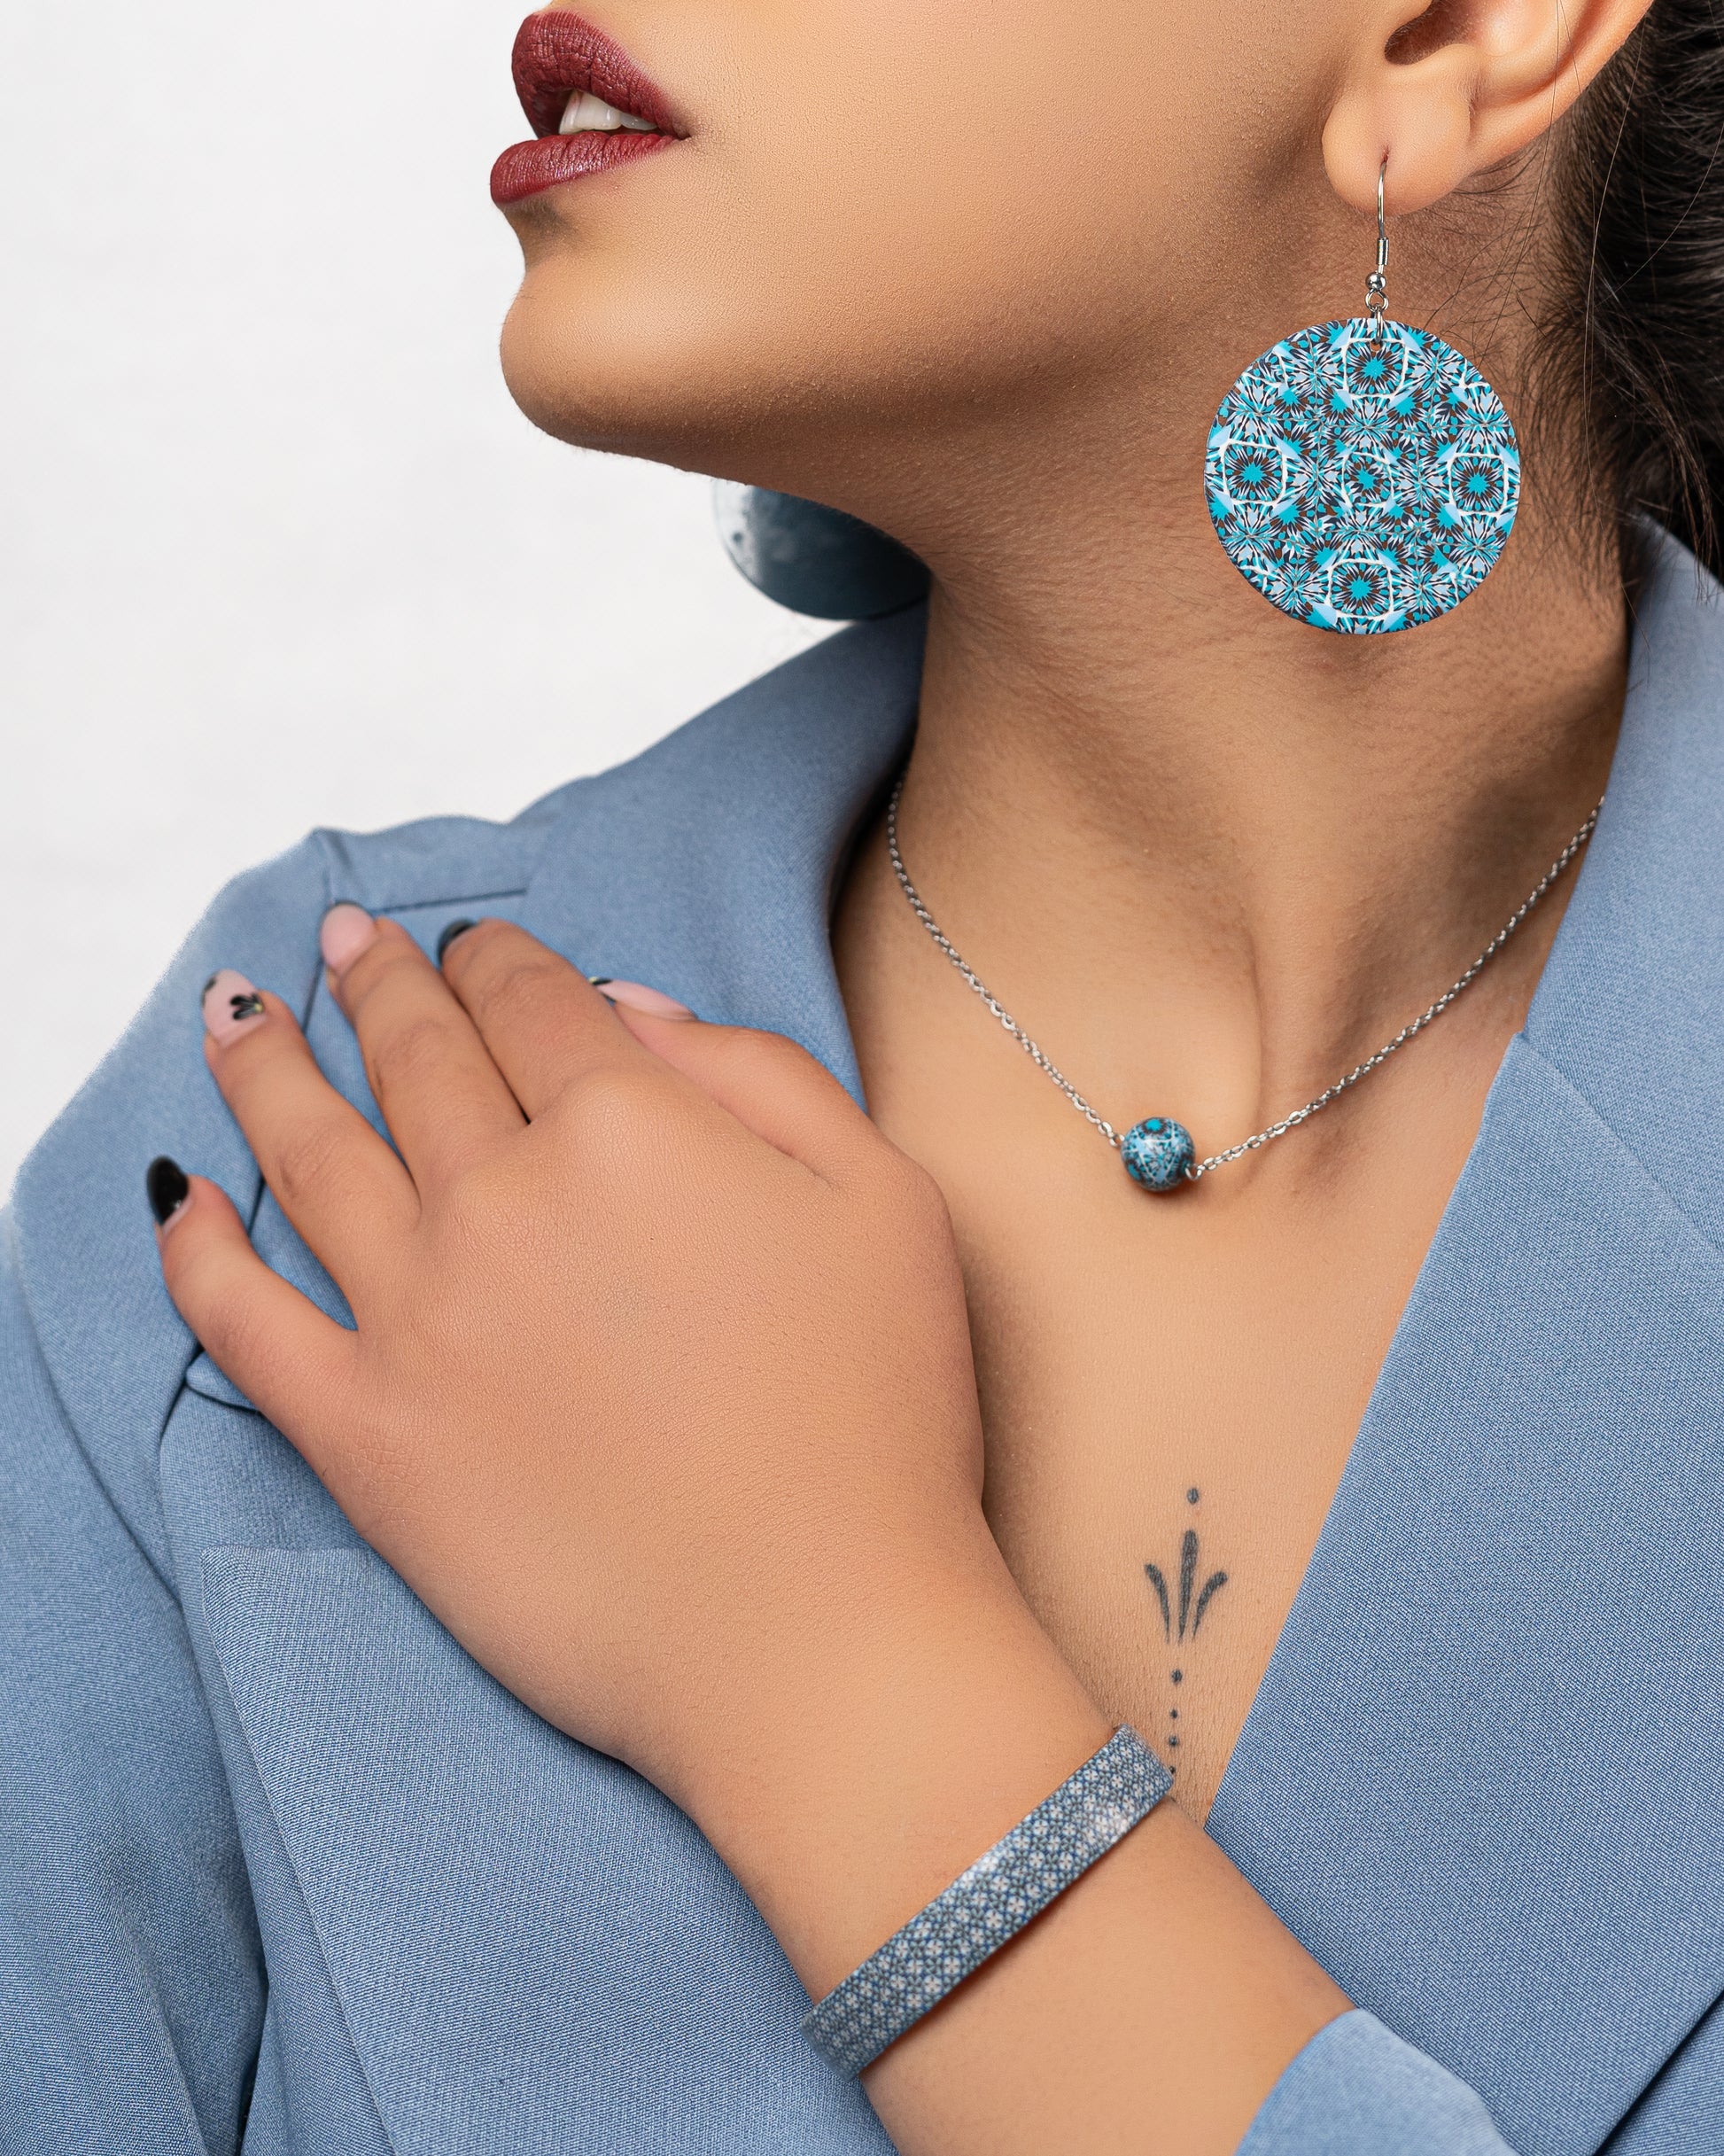 bijoux tendances bleus pour femmes. Grosses boucles d'oreilles rondes plates, pendentif perle, bracelet